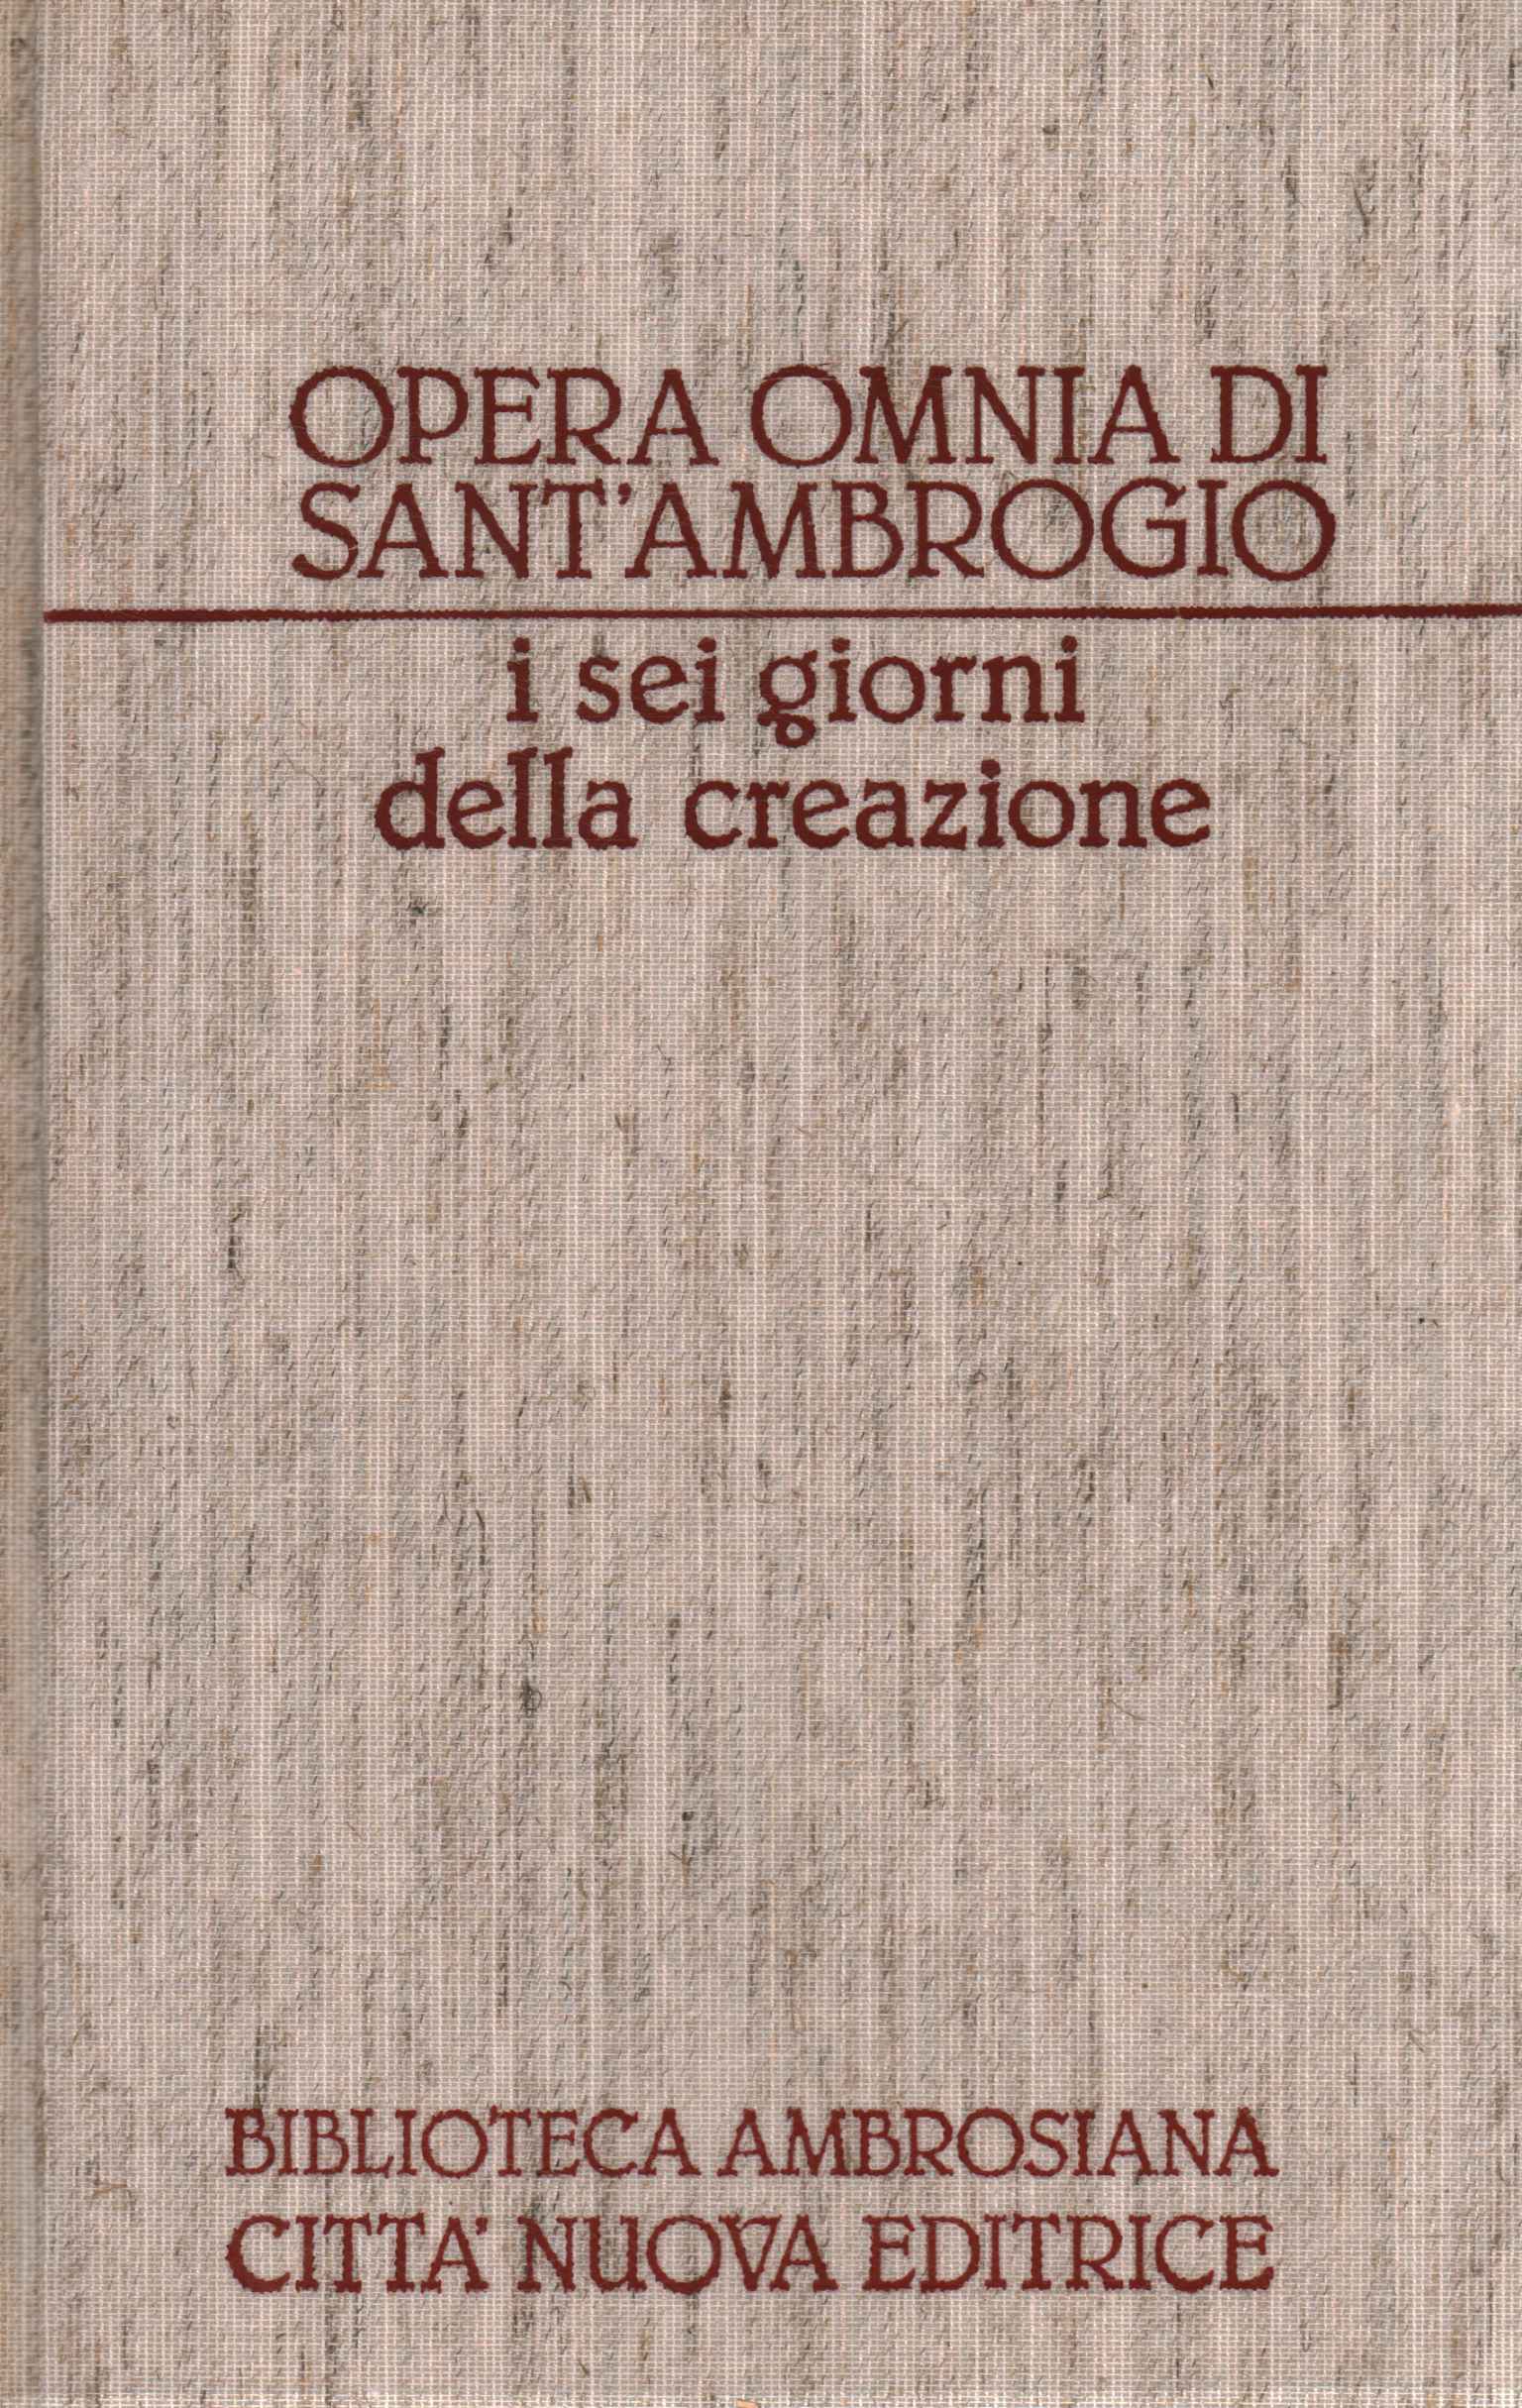 Opera Omnia di Sant'Ambrogio. O